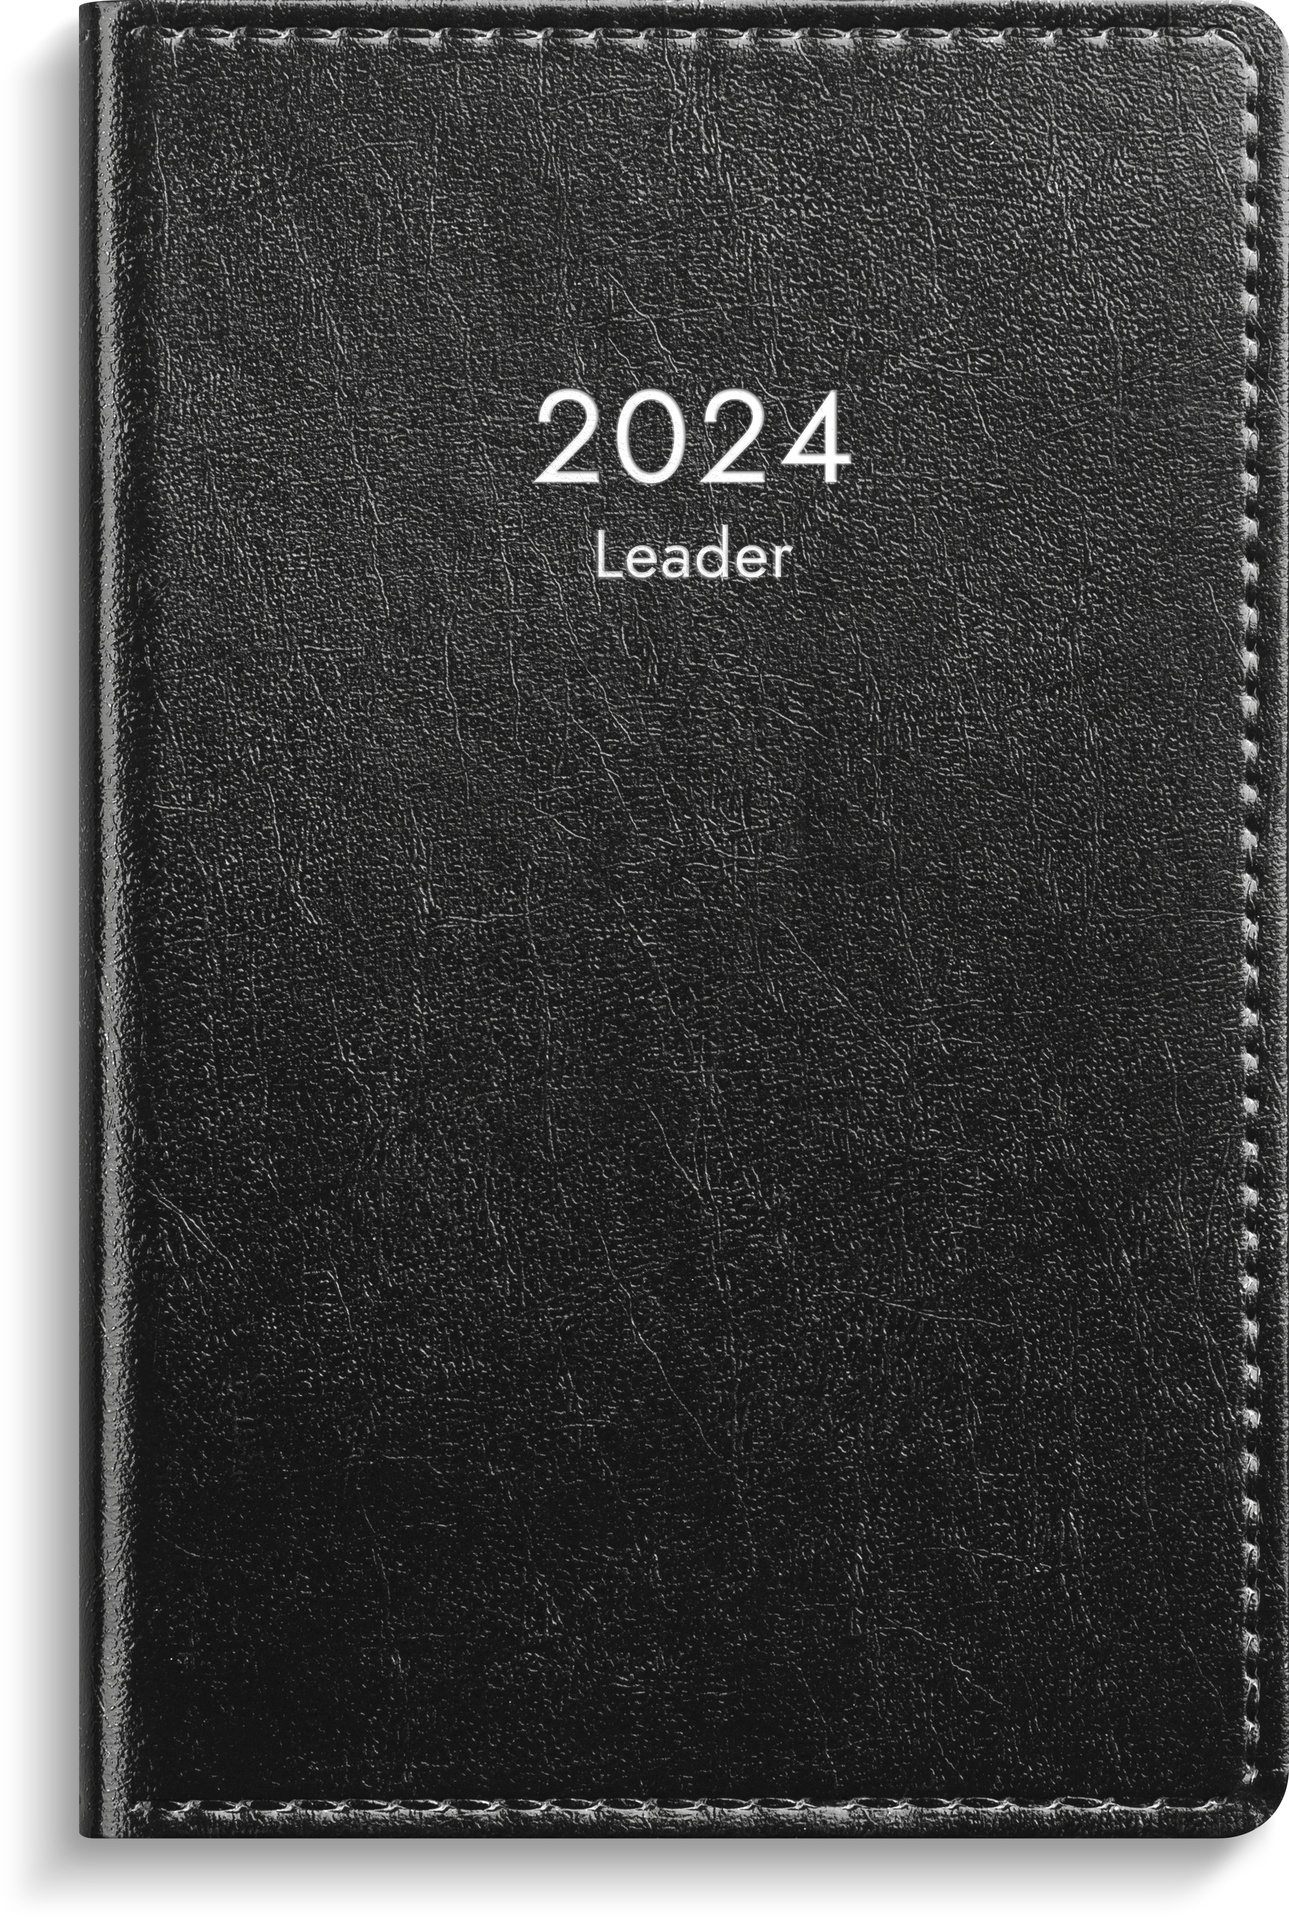 [61333024] Kalender 2024 Leader refill